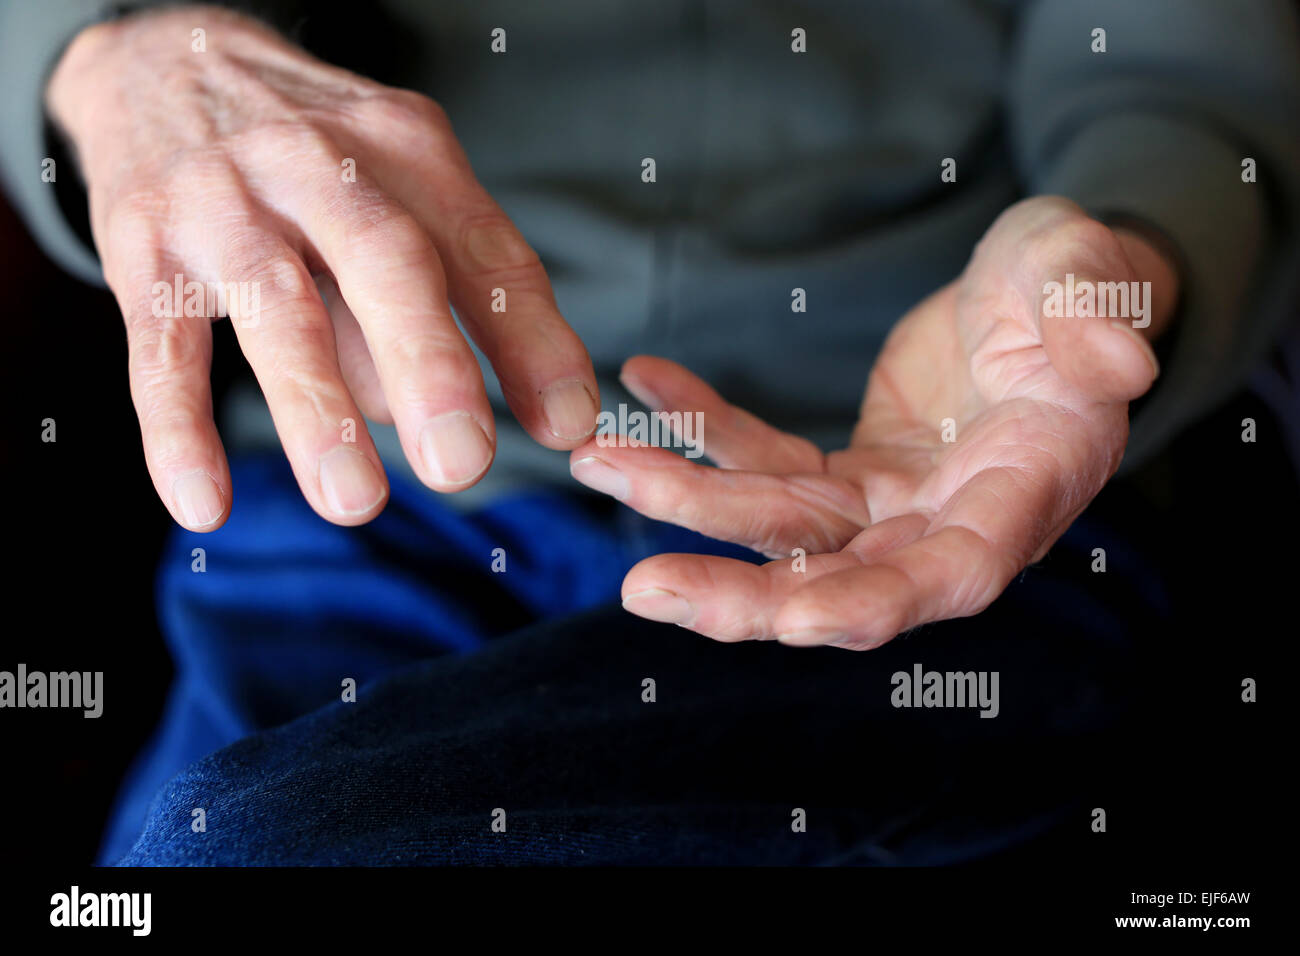 Détail d'un pensionné masculin compte sur ses doigts Banque D'Images